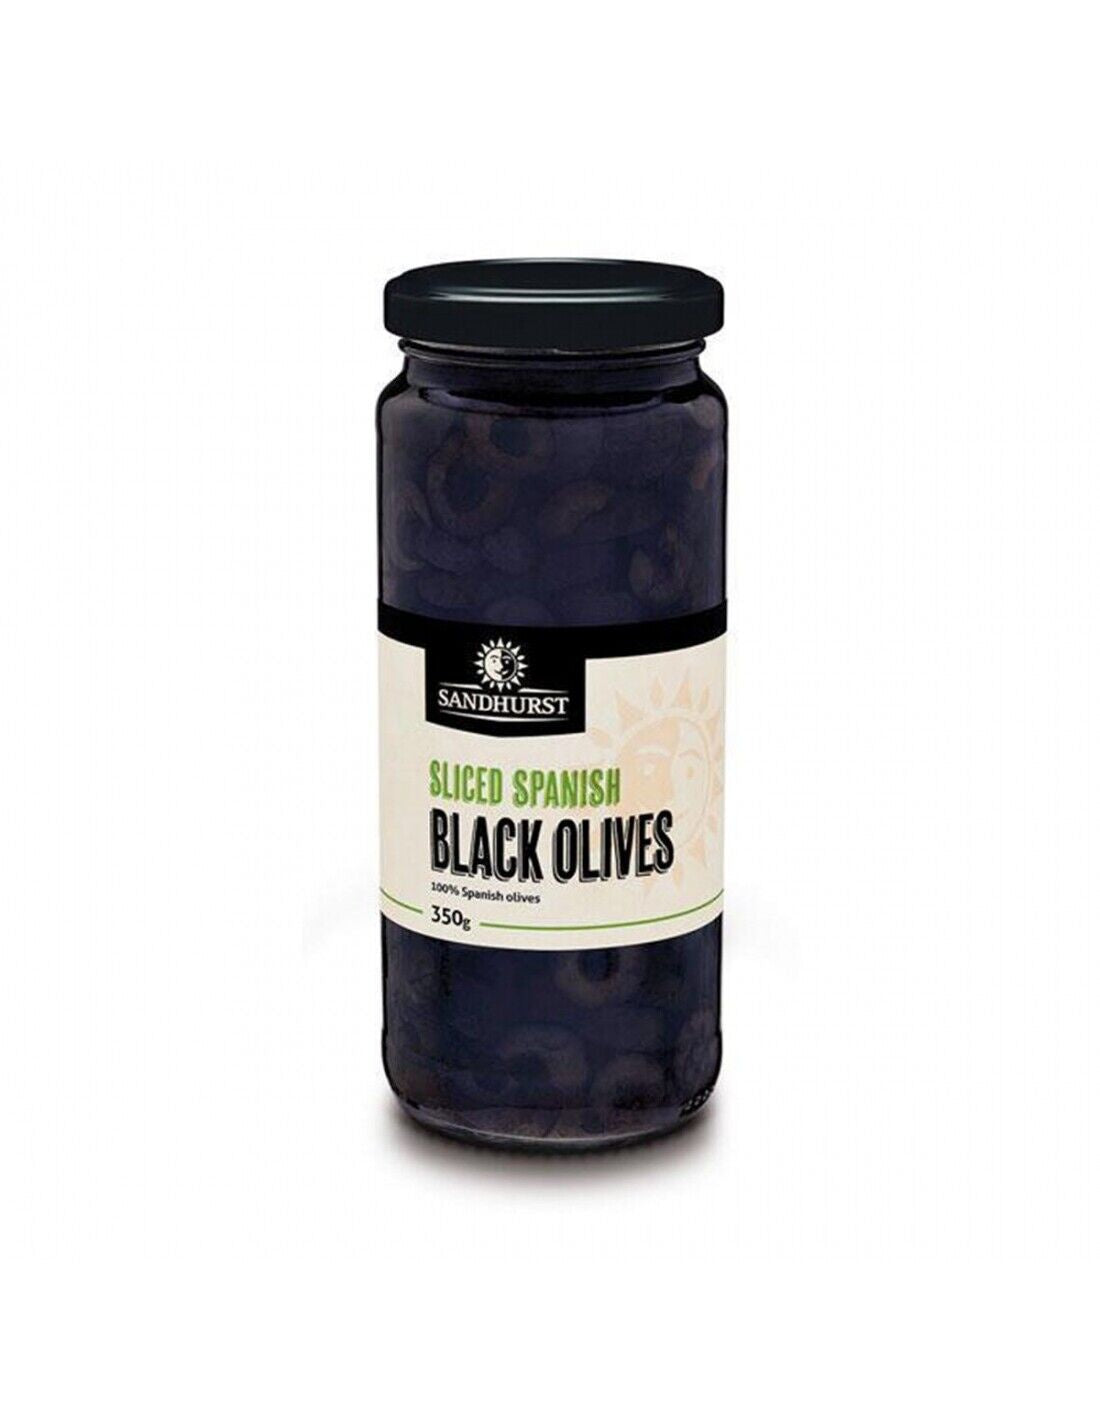 Sandhurst Sliced Spanish Black Olives 350g